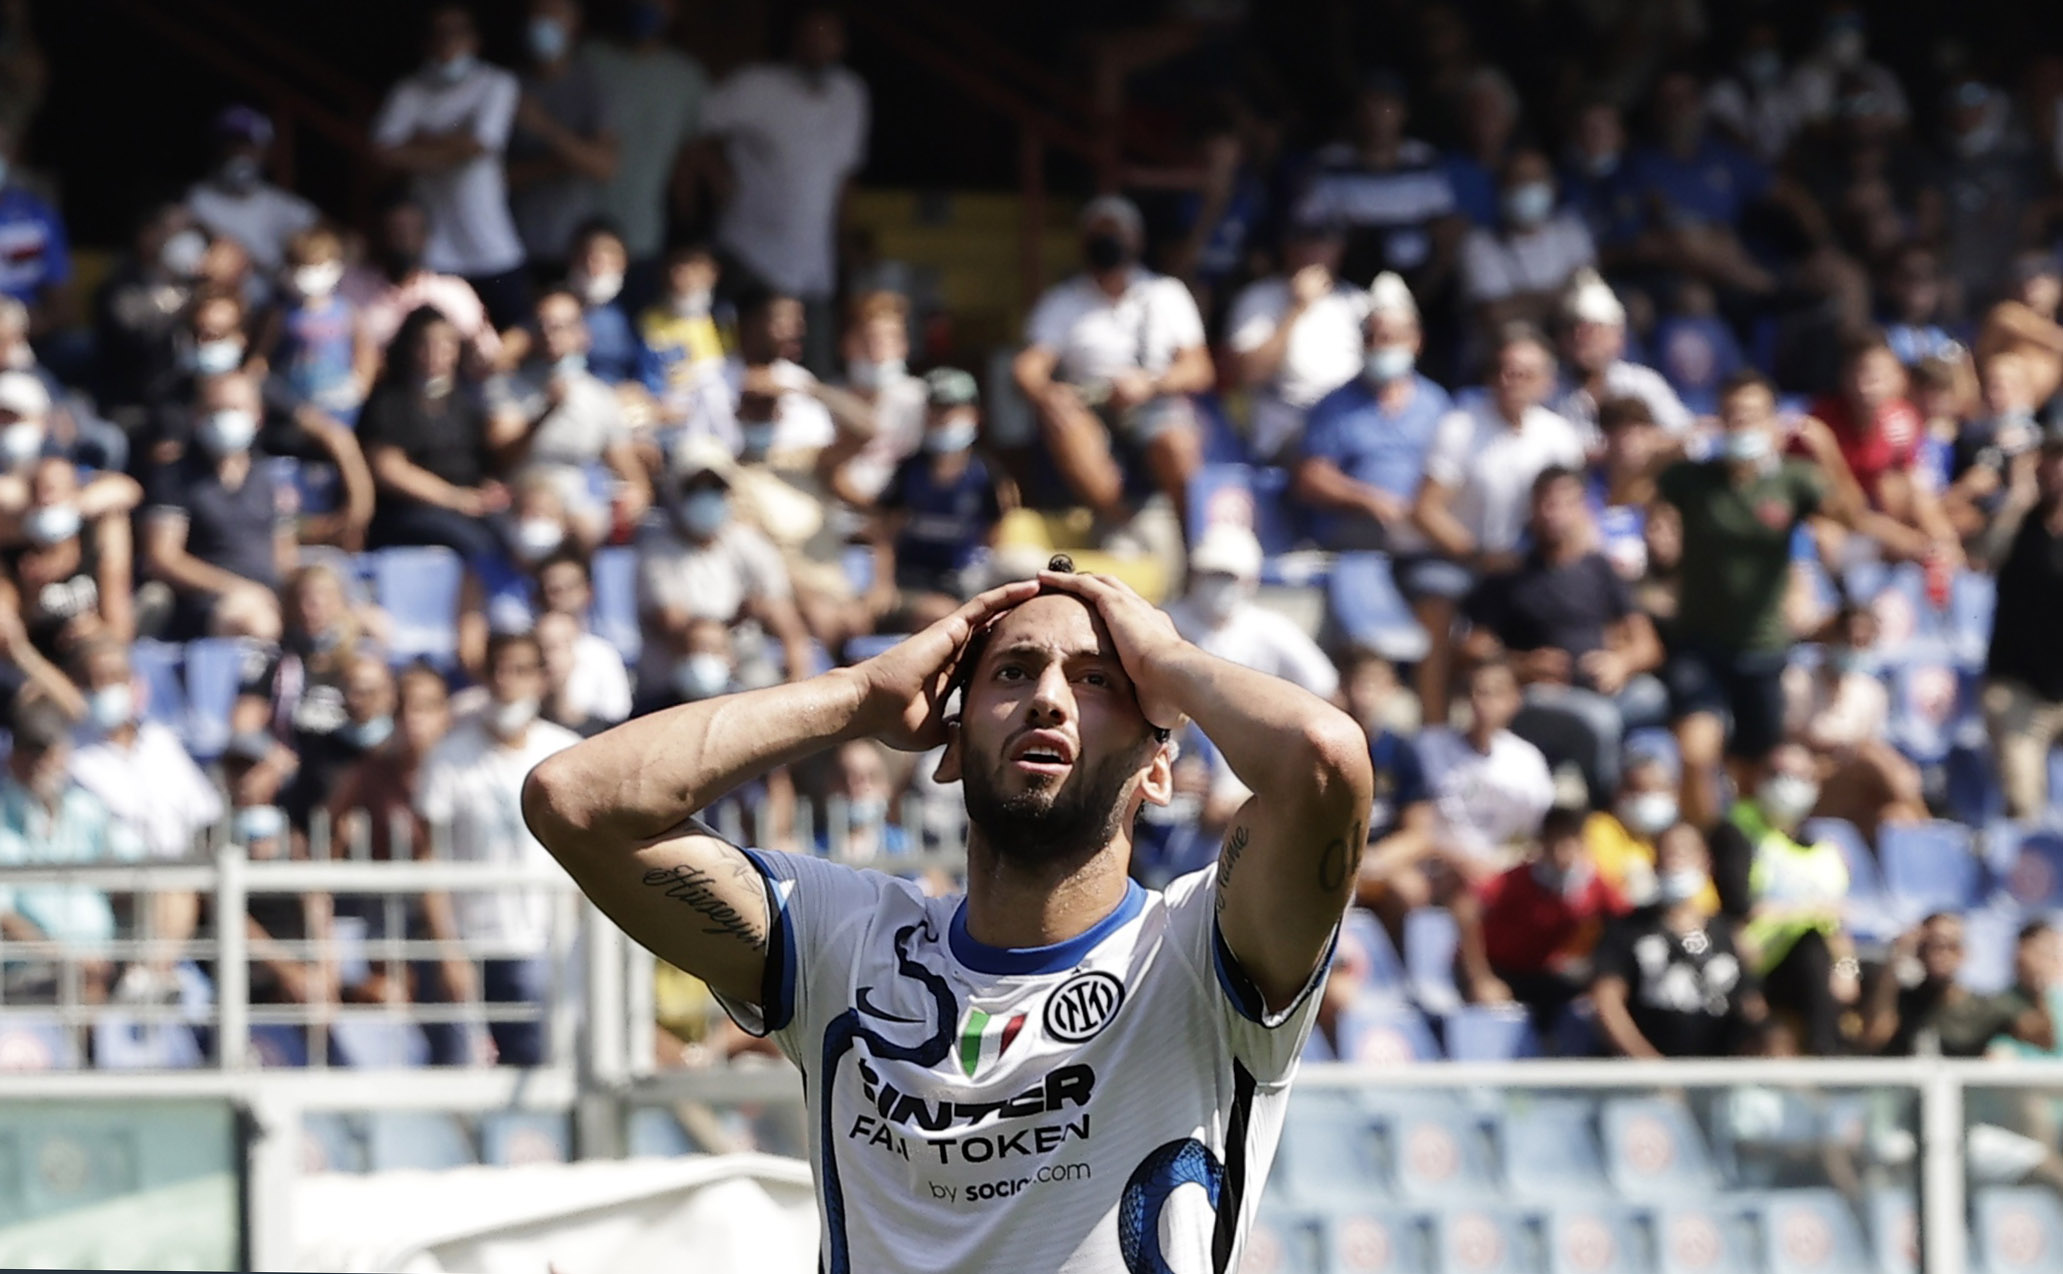 Σαμπντόρια – Ίντερ 2-2: Πρώτη βαθμολογική απώλεια για τους πρωταθλητές Ιταλίας